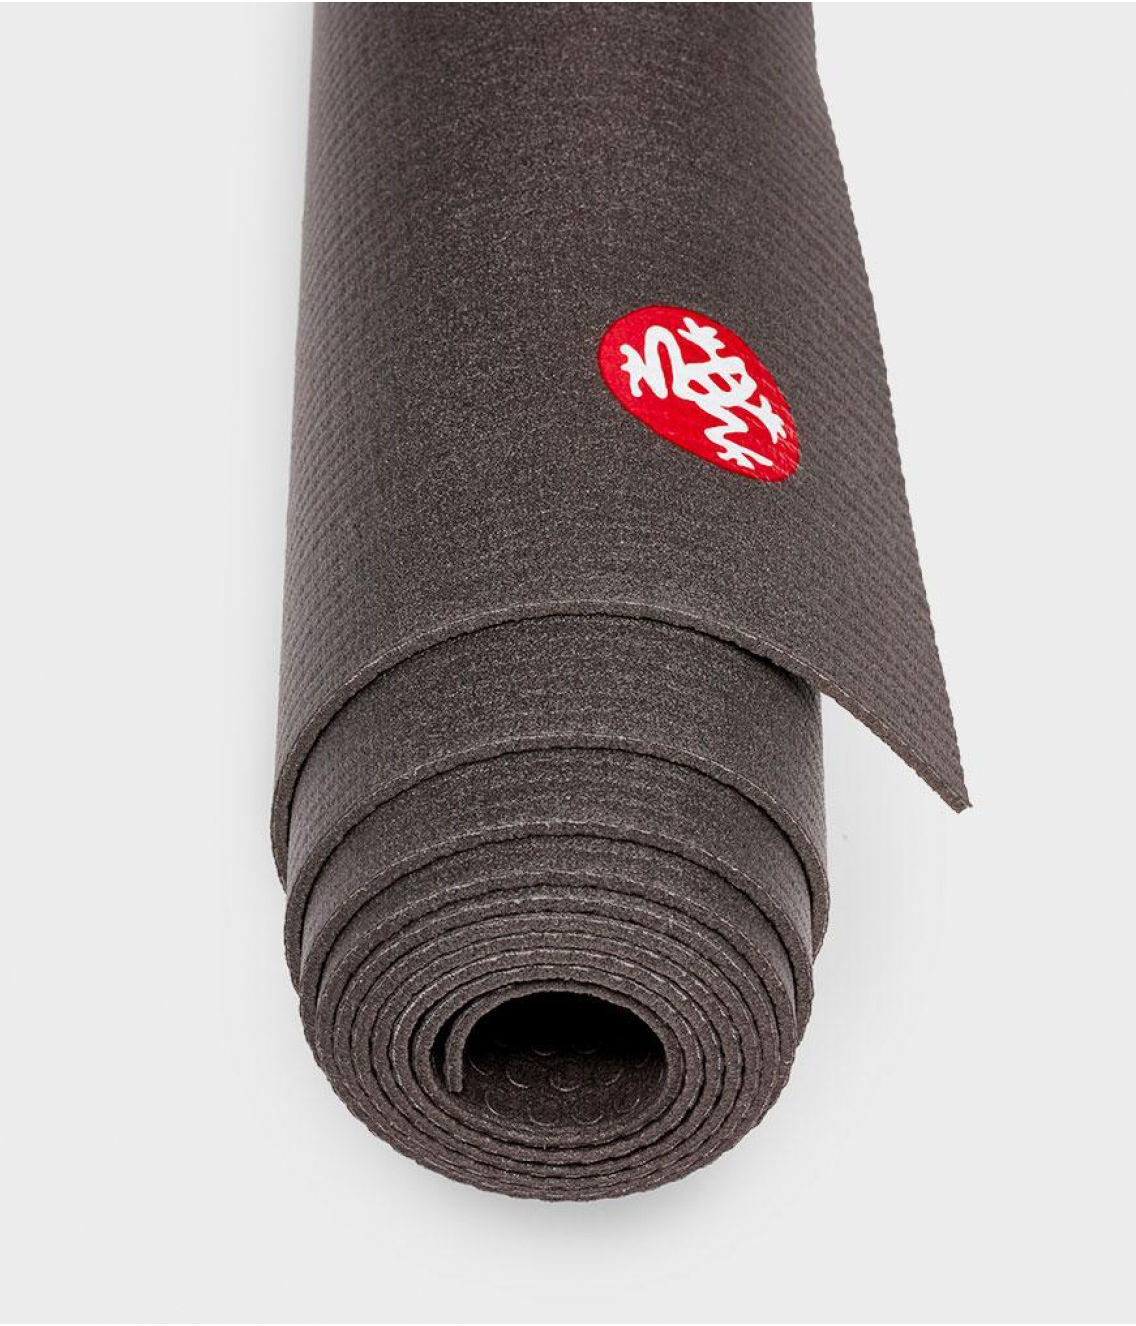 Профессиональный коврик для йоги из ПВХ Manduka PRO Travel 200*61*0,25 см - Black (Limited Edition)